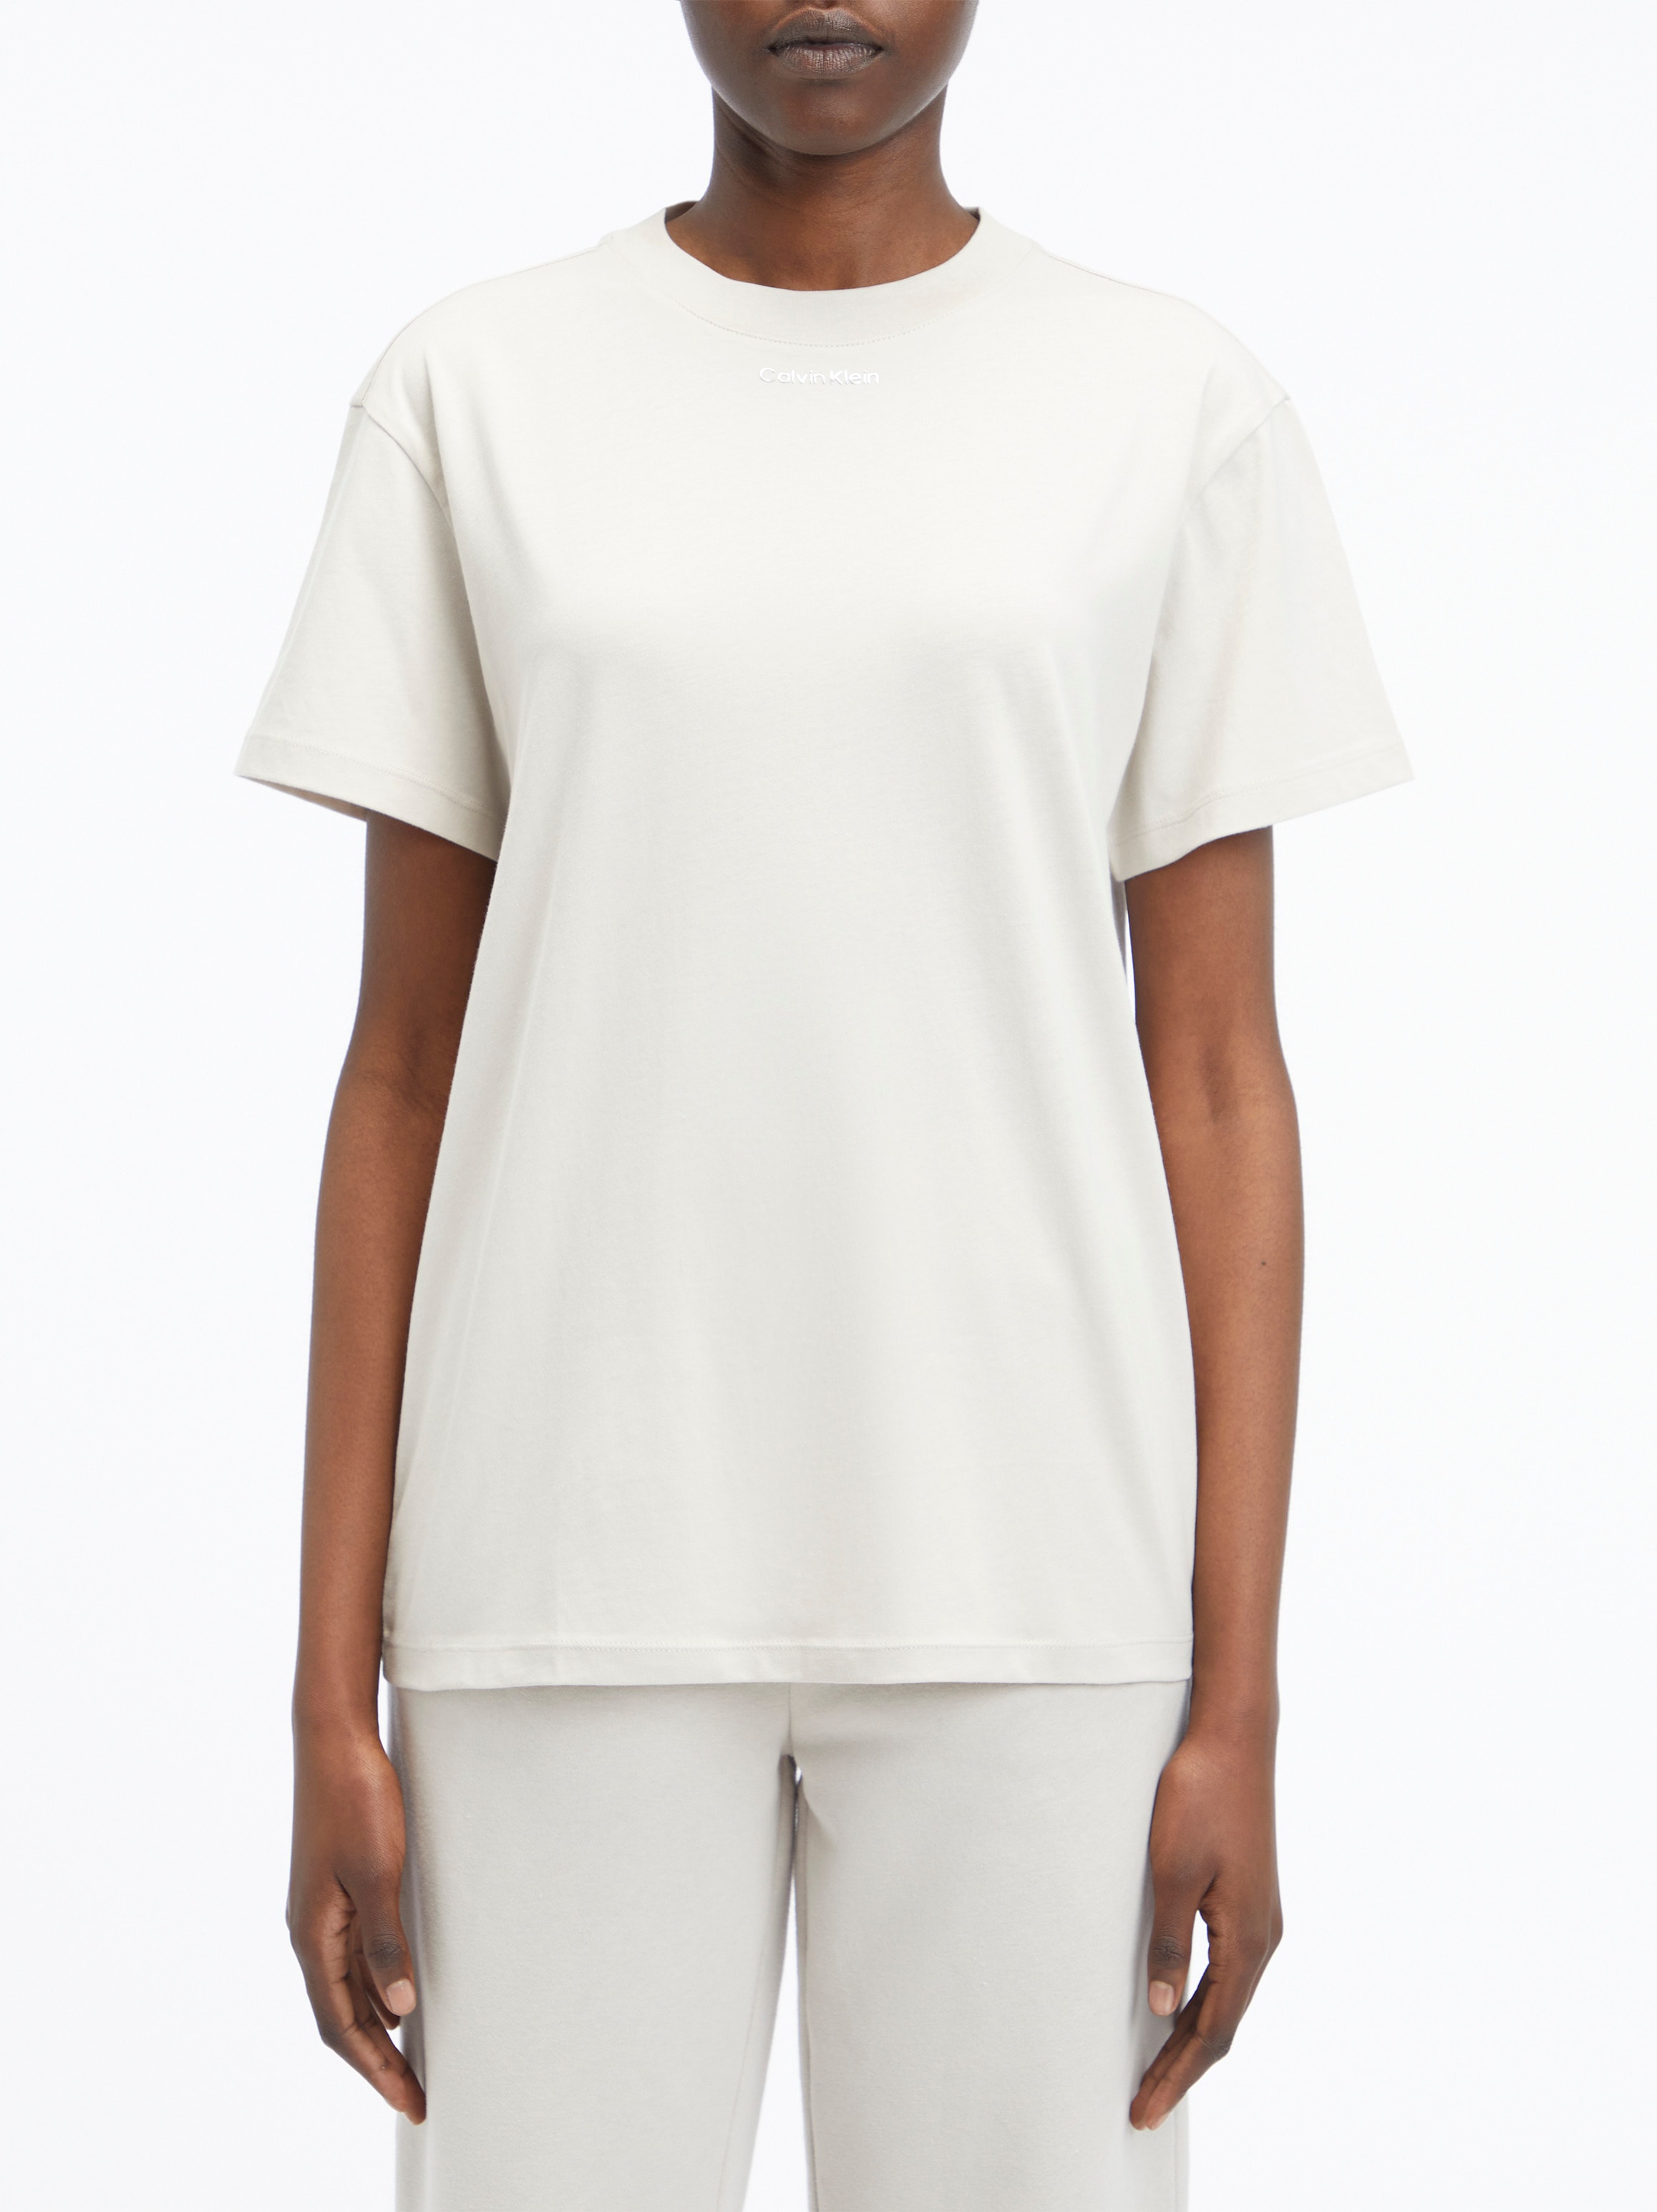 T-Shirt | UNIVERSAL T Calvin Klein SHIRT« MICRO LOGO bestellen »METALLIC